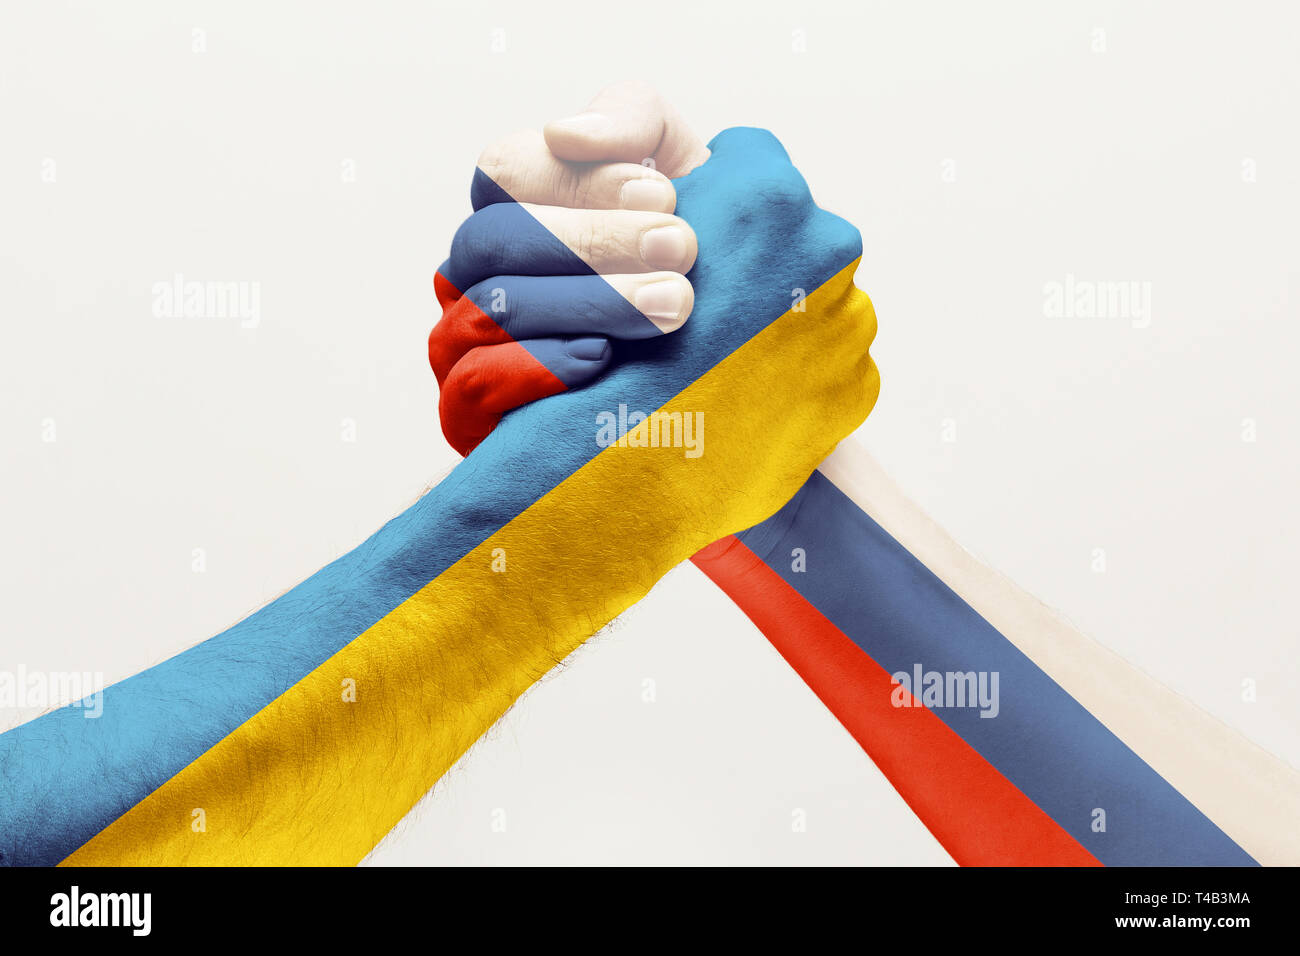 Stop, um herauszufinden, wer es besser. Zwei männliche Hände kämpfen in Russland und der Ukraine Flaggen farbig auf Weiß studio Hintergrund isoliert. Begriff der politischen, ökonomischen, sozialen Aggressionen, Uneinigkeit. Stockfoto